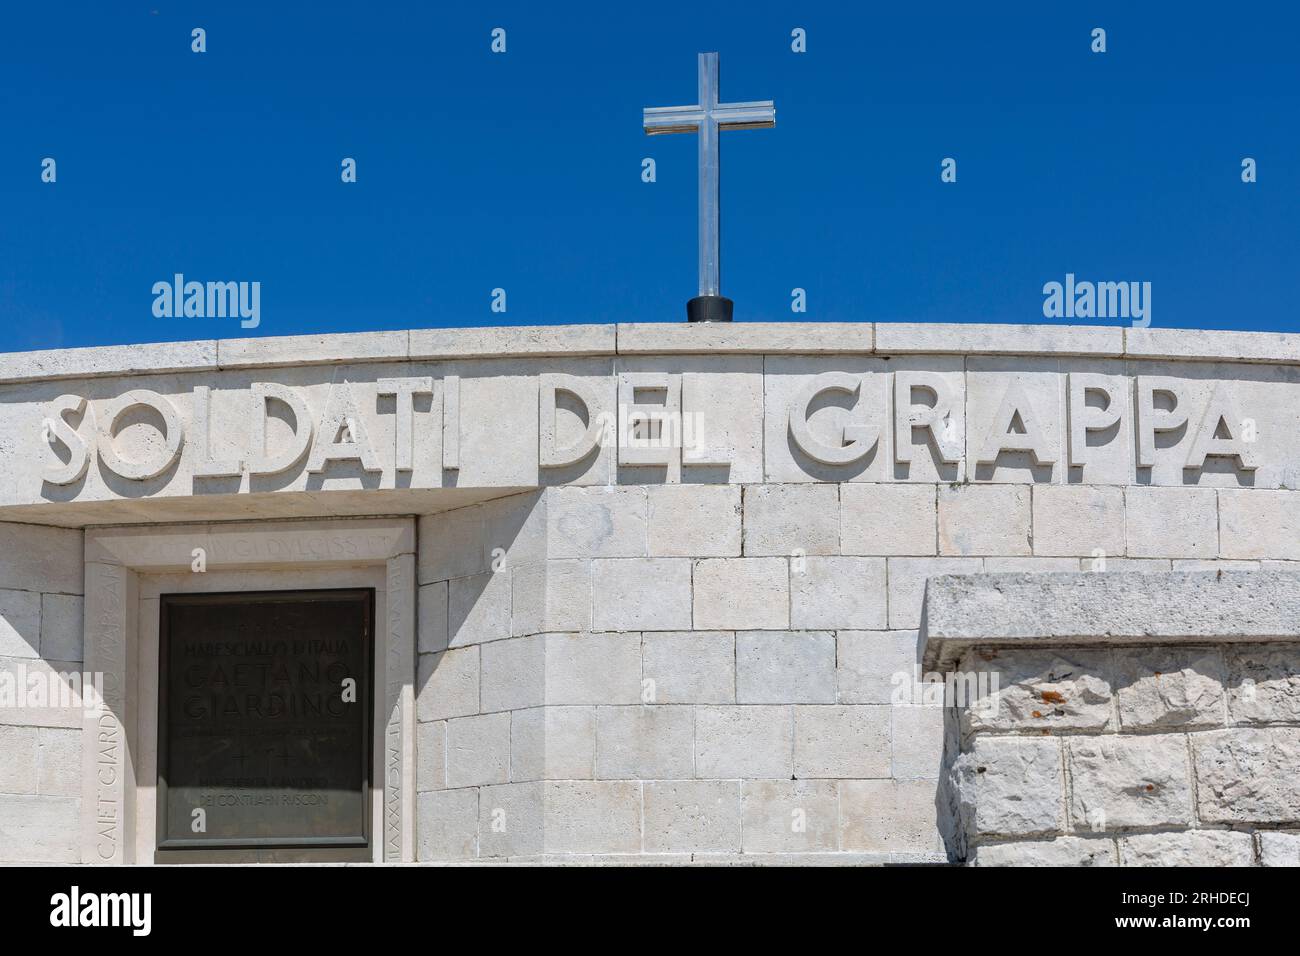 Il memoriale militare di Monte Grappa è il più grande ossario militare italiano della prima guerra mondiale. Foto Stock